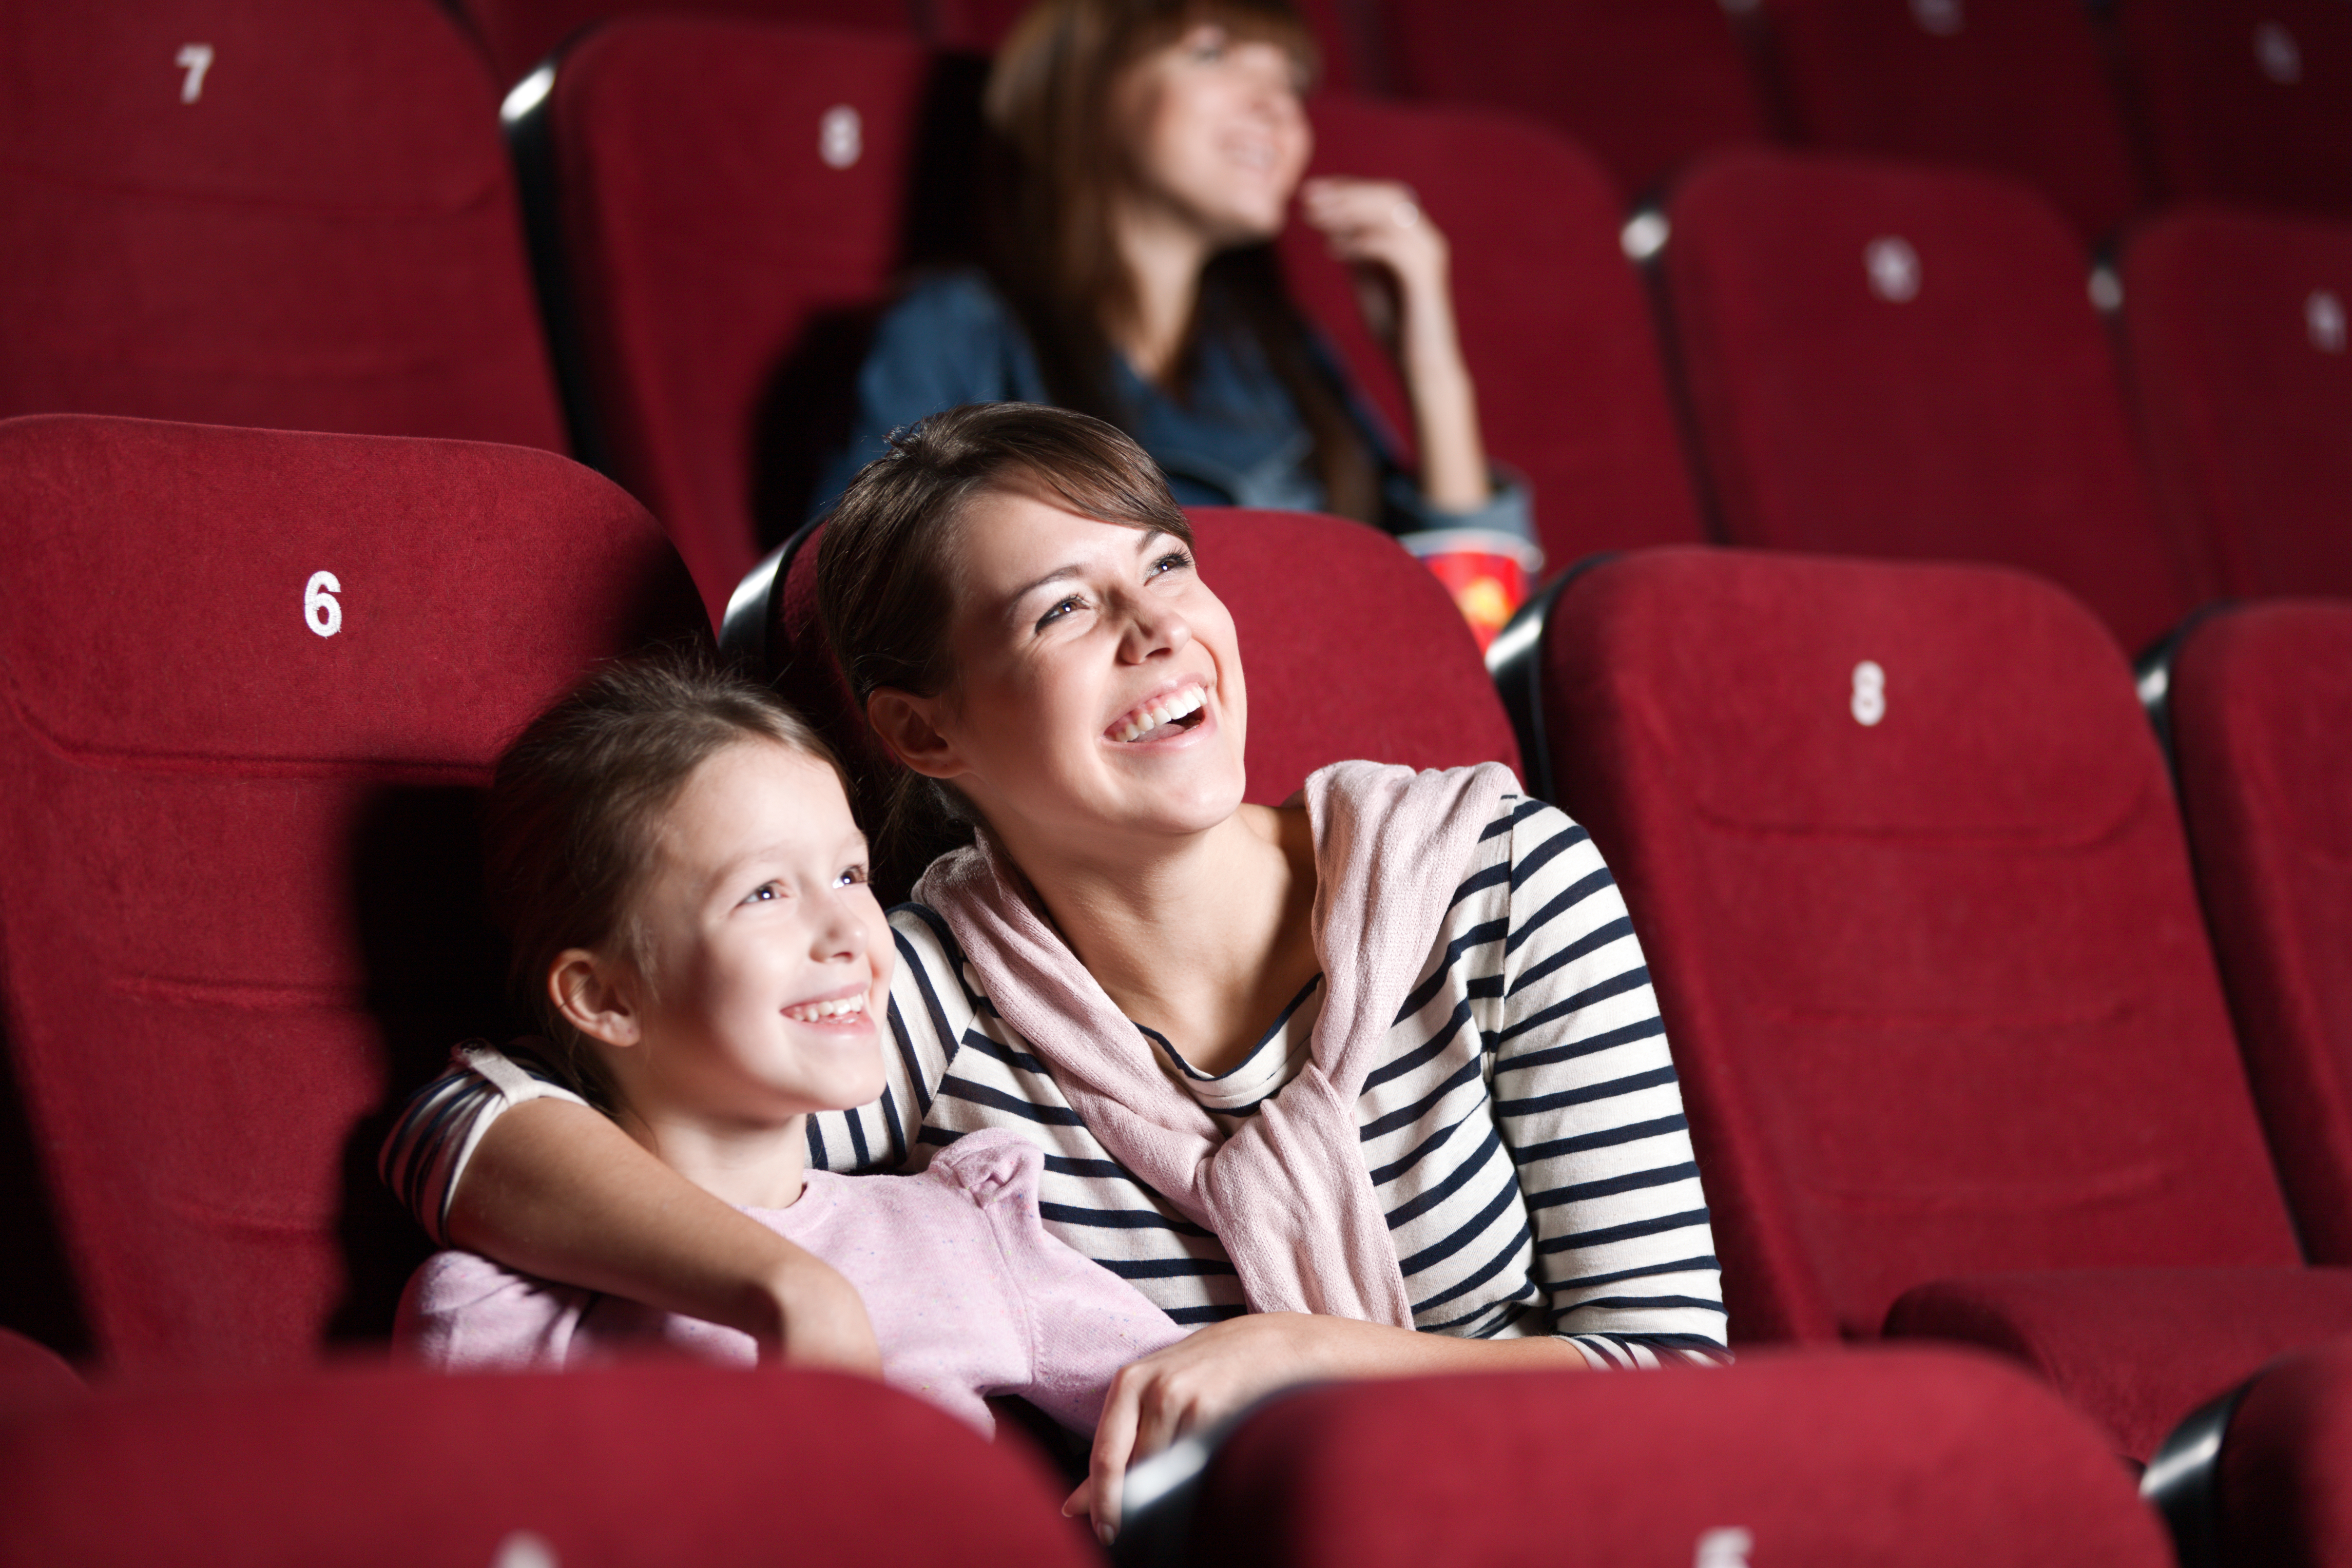 Une mère et sa fille s'amusent dans une salle de cinéma | Source : Shutterstock